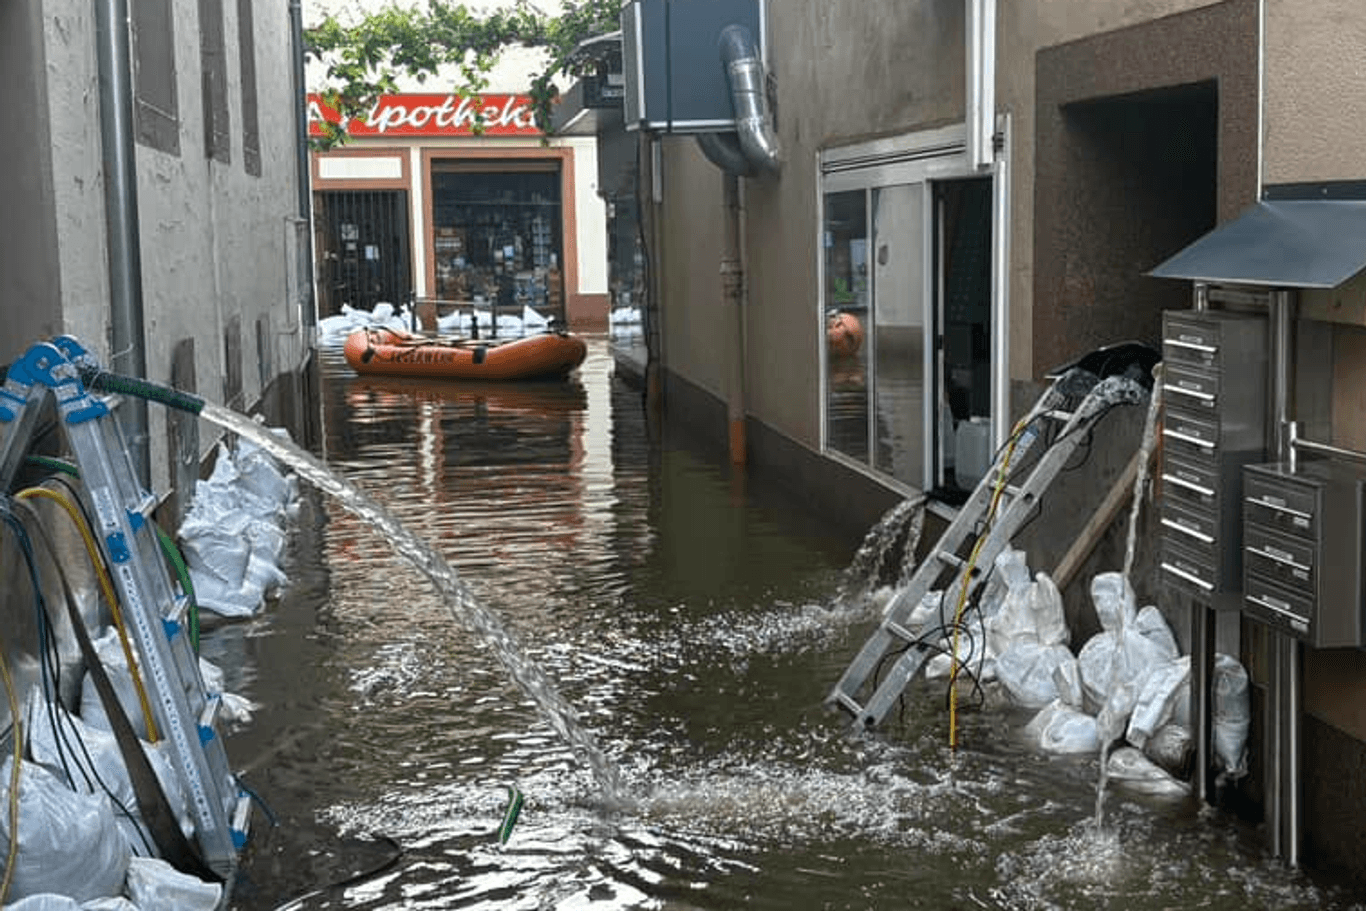 Überschwemmte Straße in Blieskastel: Für Evakuierungen werden auch Schlauboote eingesetzt.